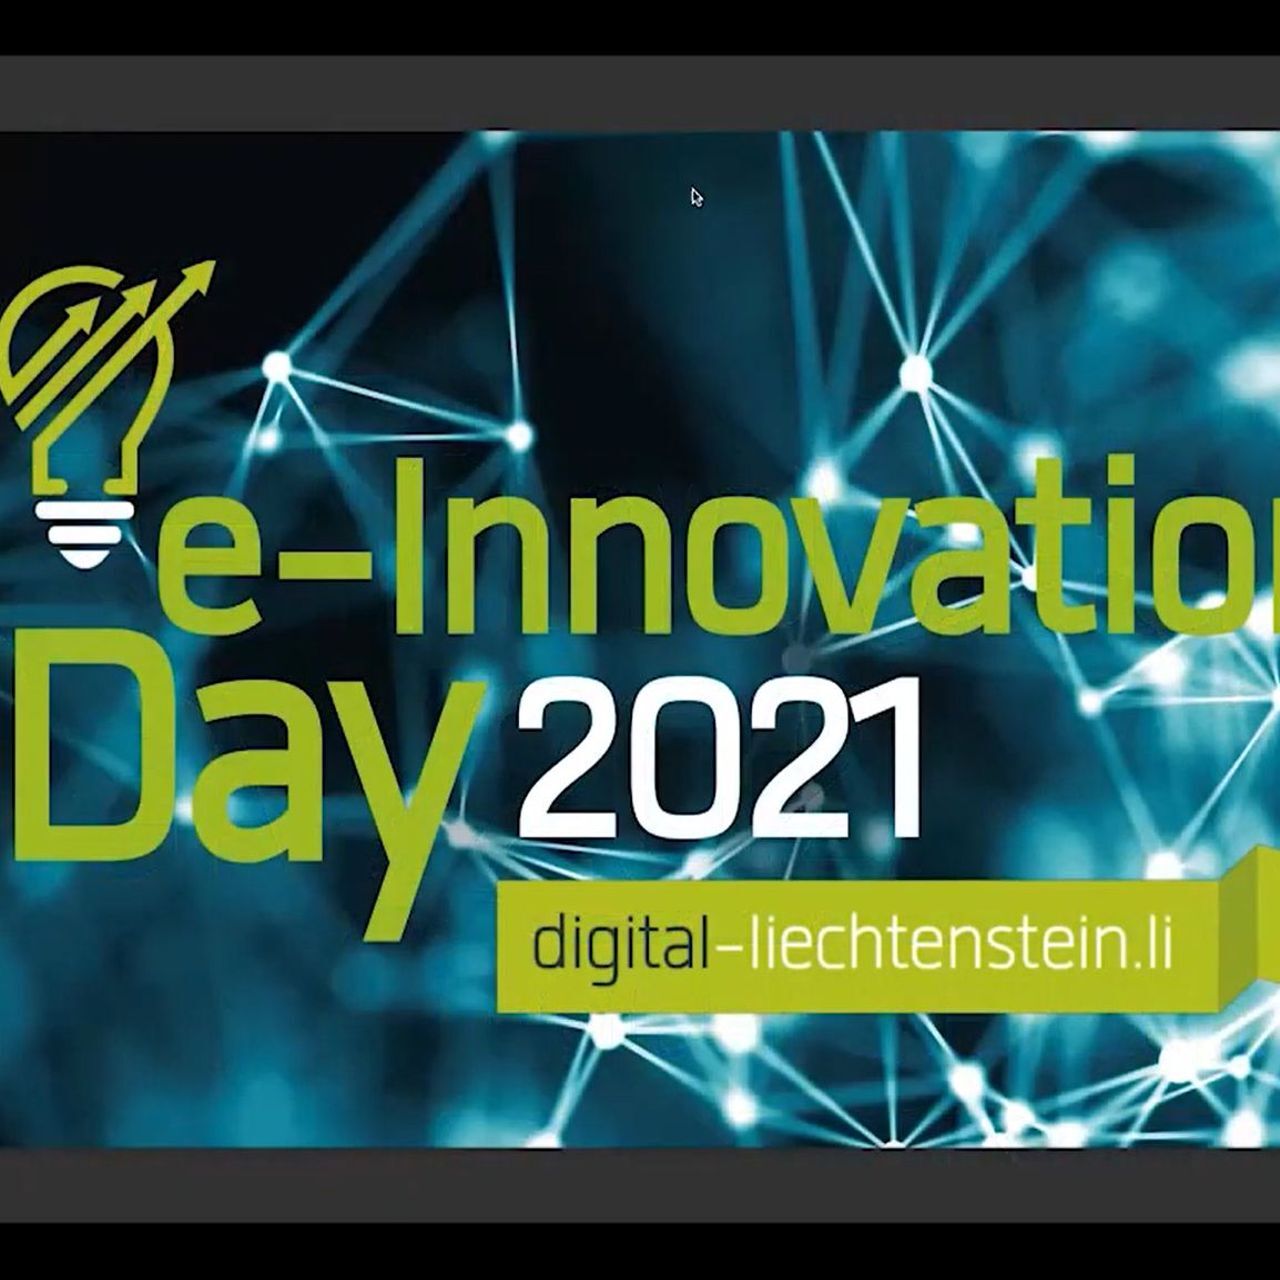 Elektron innovatsiyalar kuni: Lixtenshteyn 2021 "e-Innovation" vebinarining dastlabki ramkasi